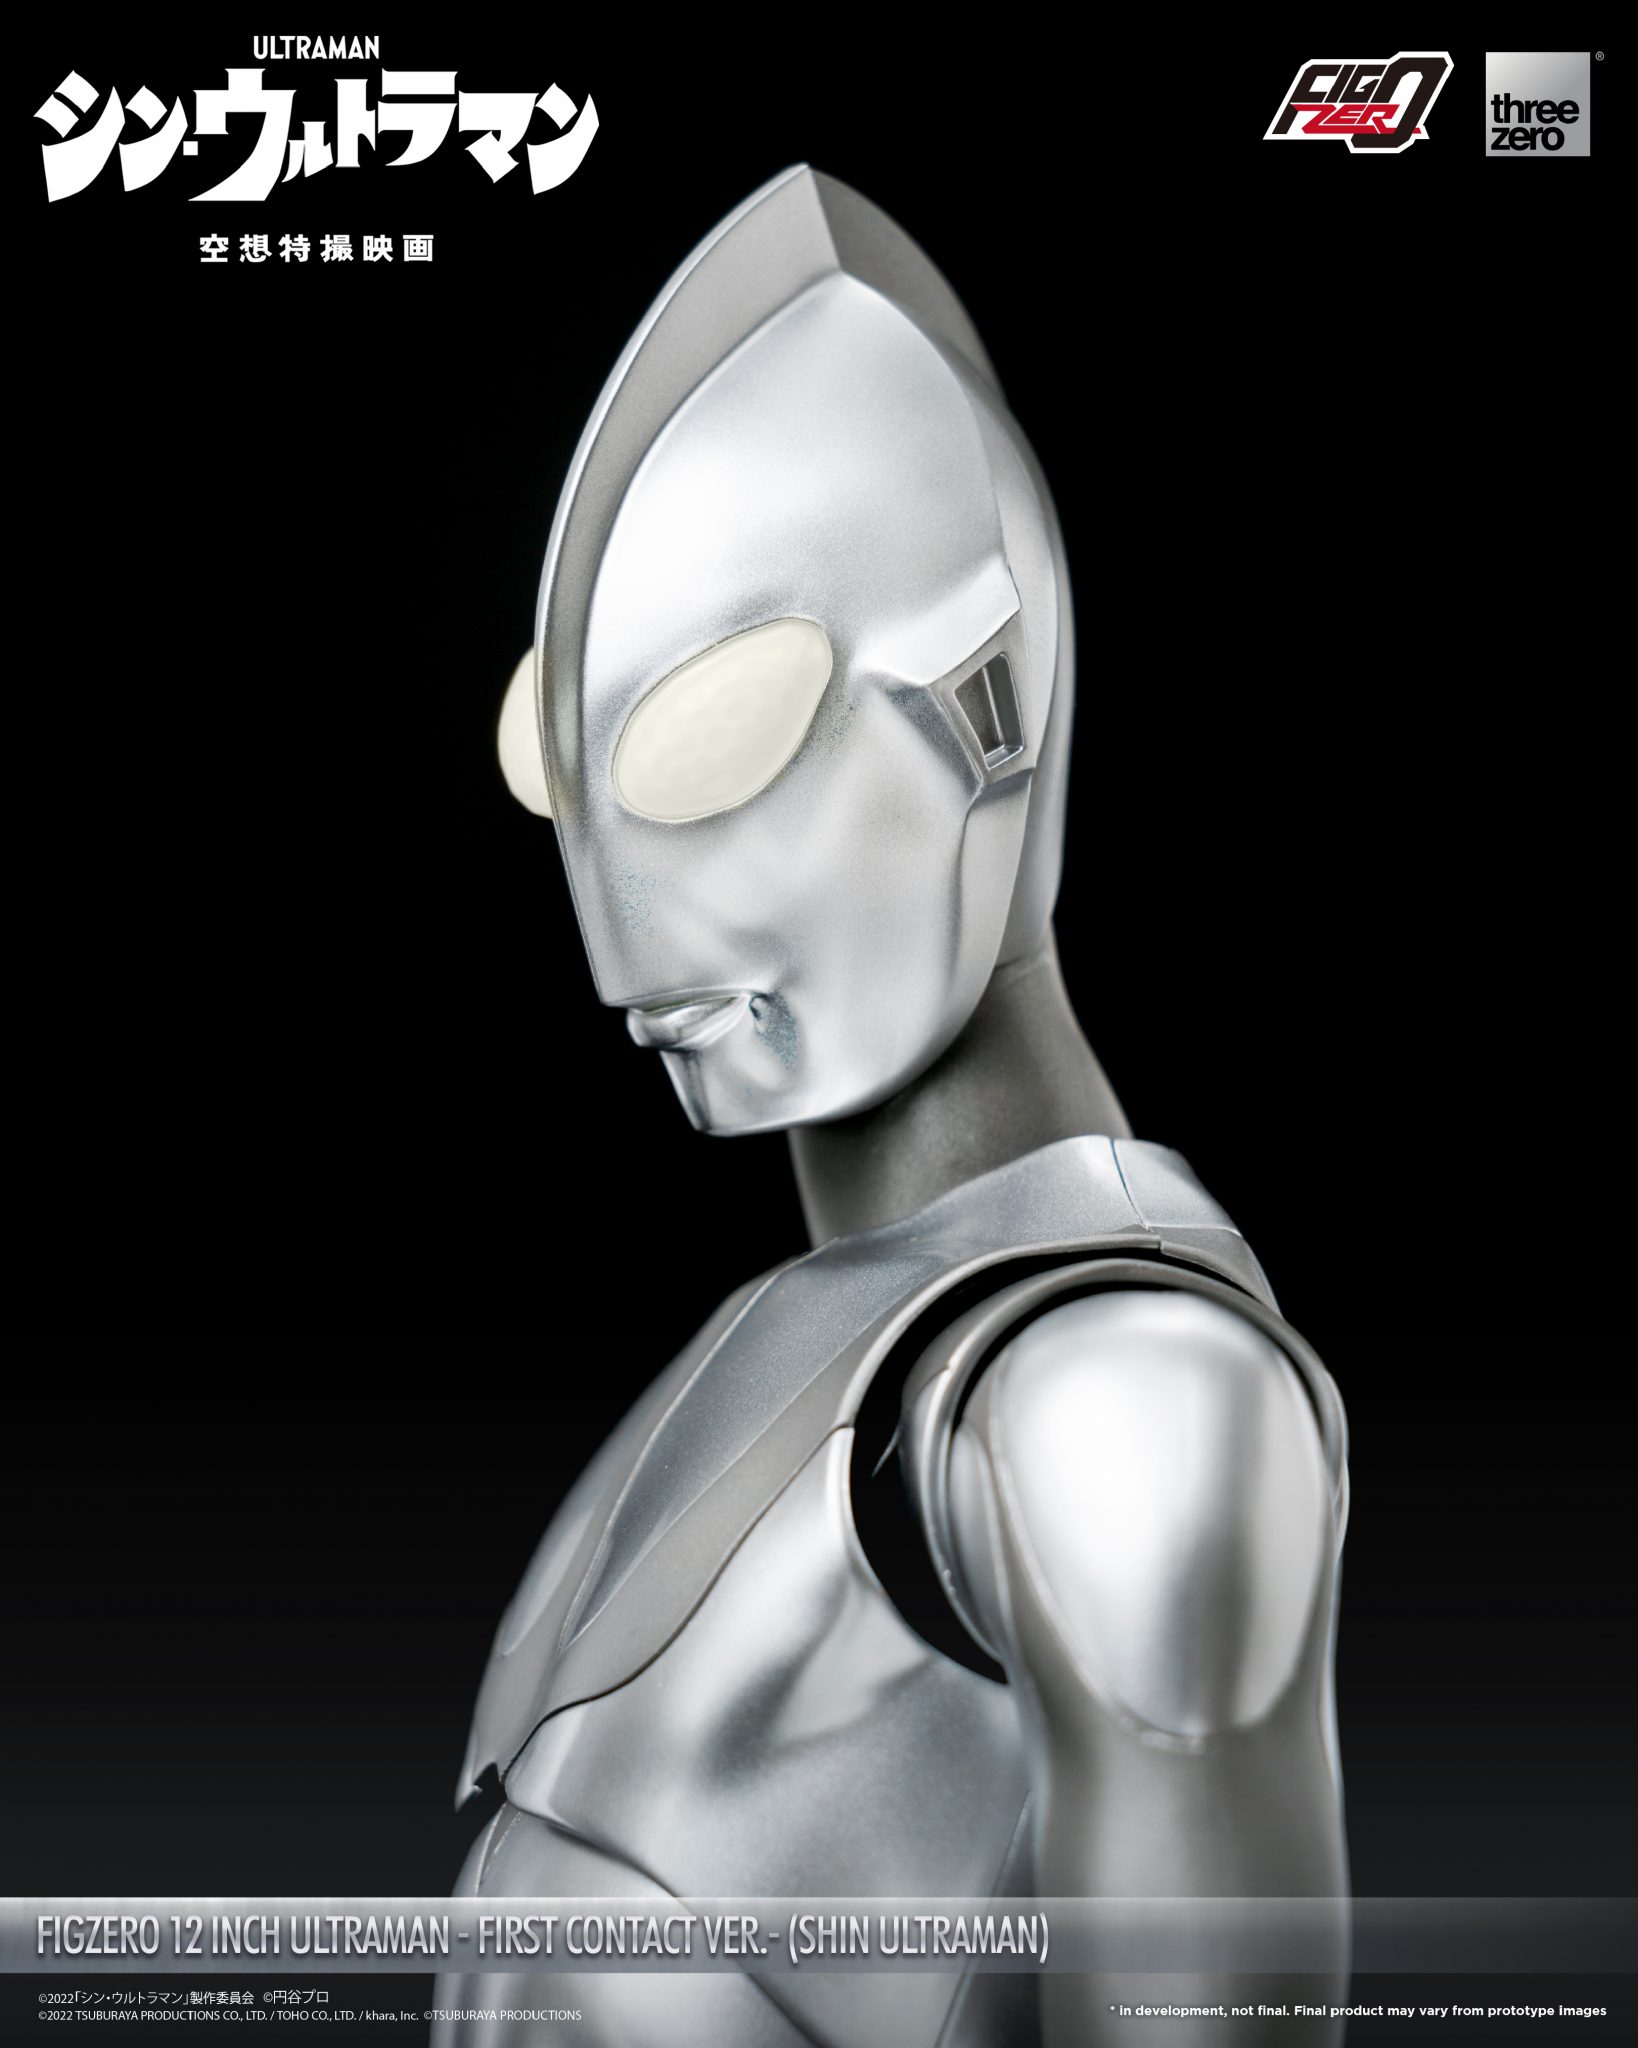 SHIN ULTRAMANFigZero 12 inch Ultraman -First Contact Ver.- (SHIN ...